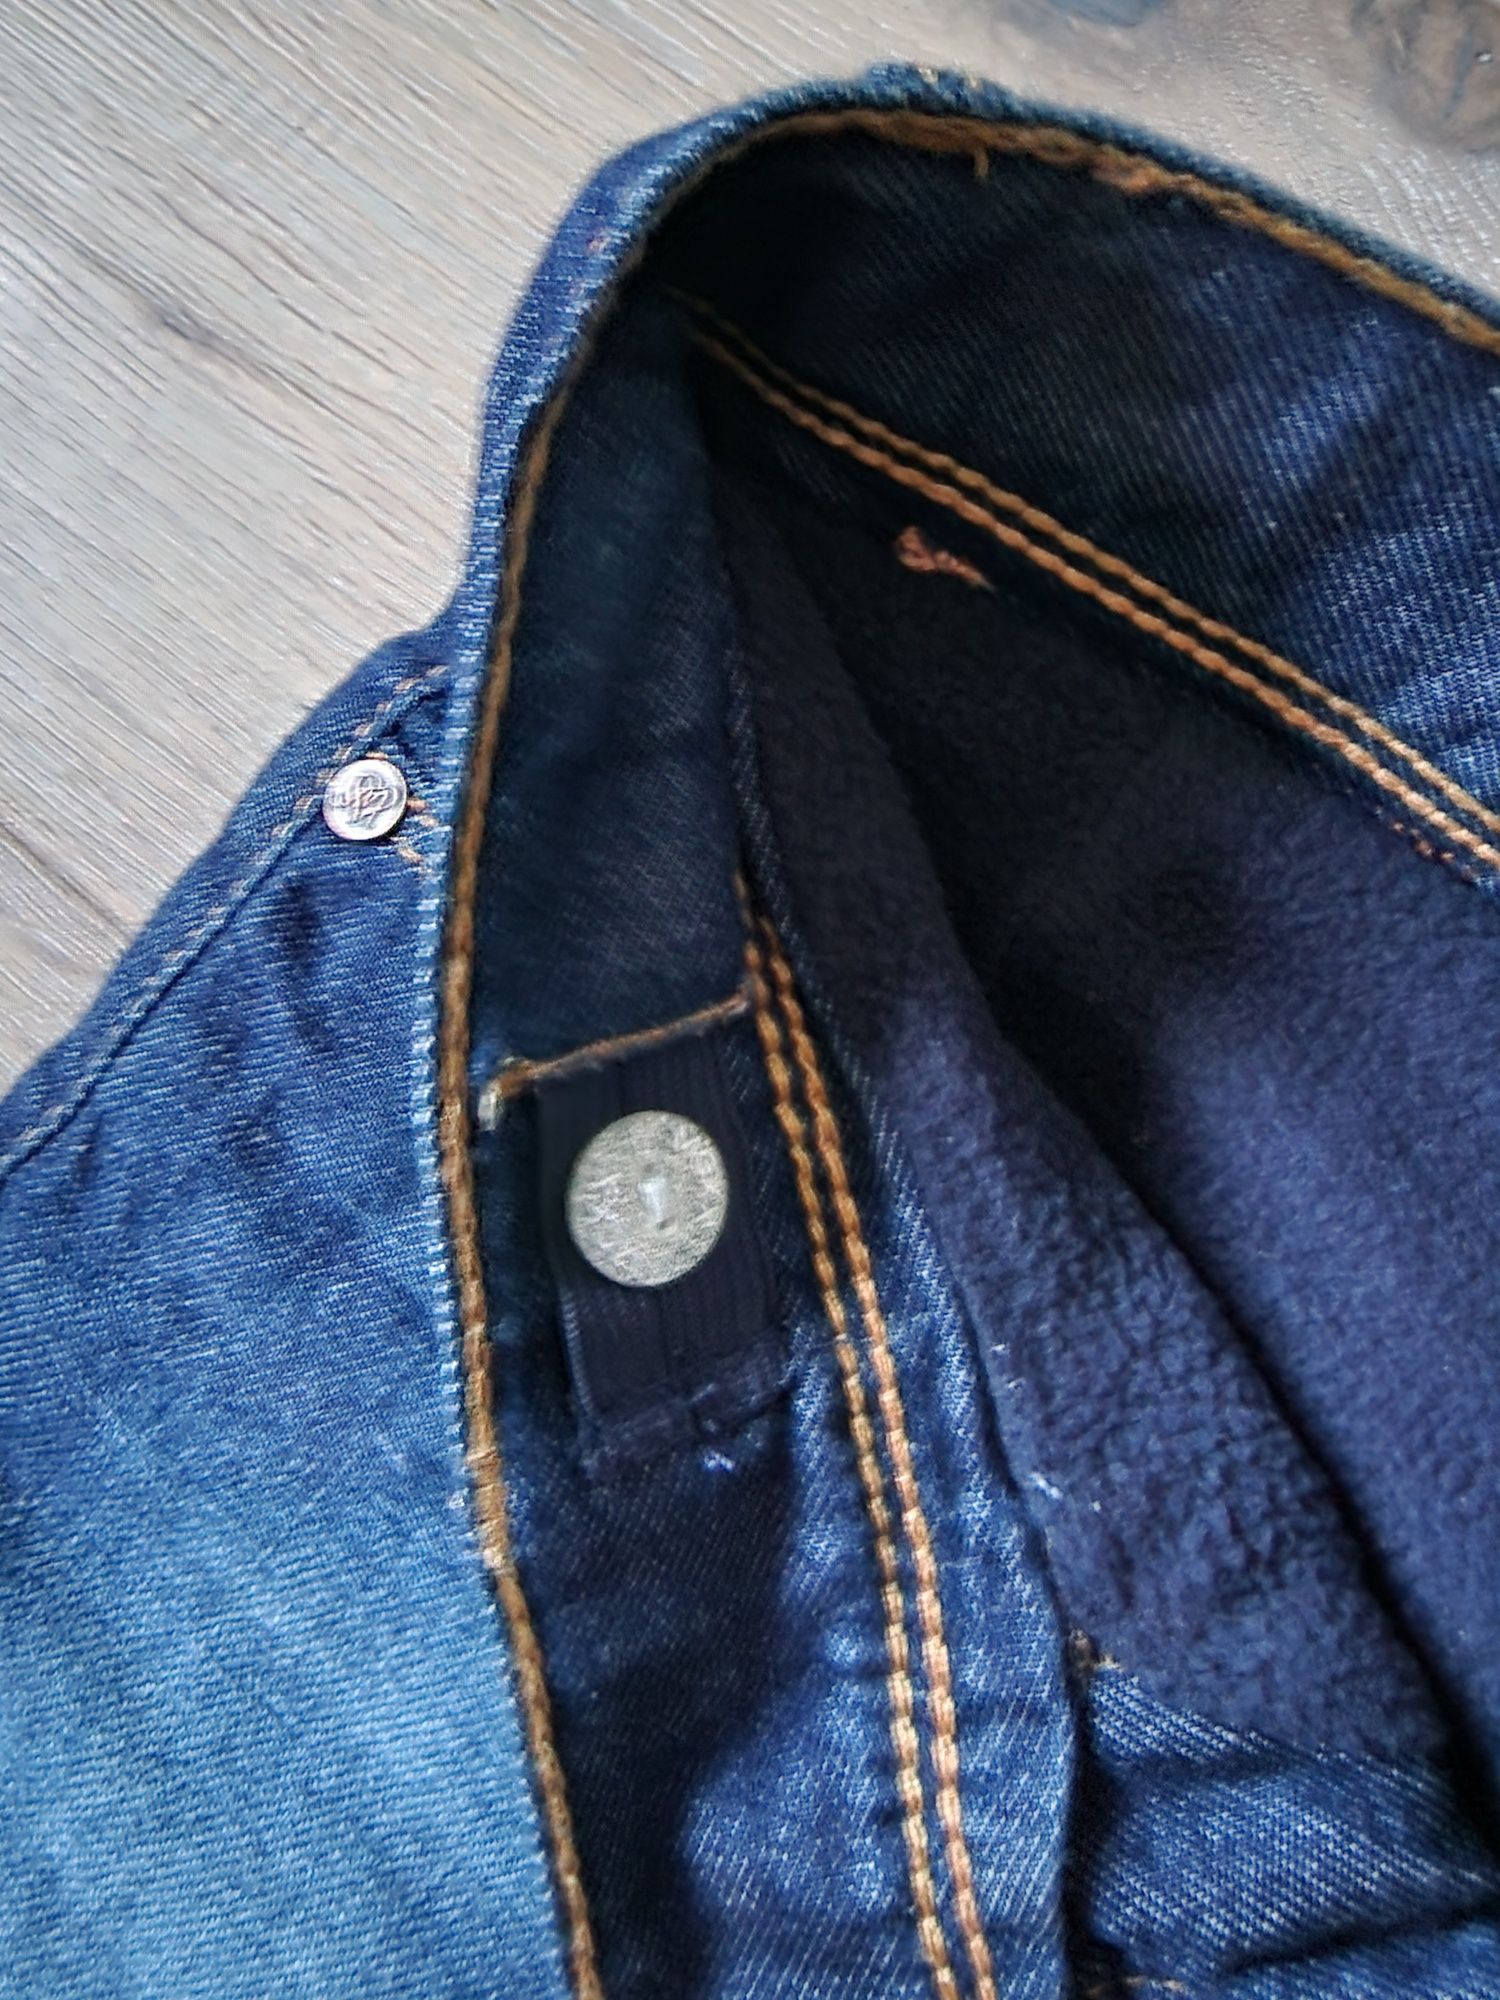 Spodnie ocieplane jeans MEXX, roz. 128 cm